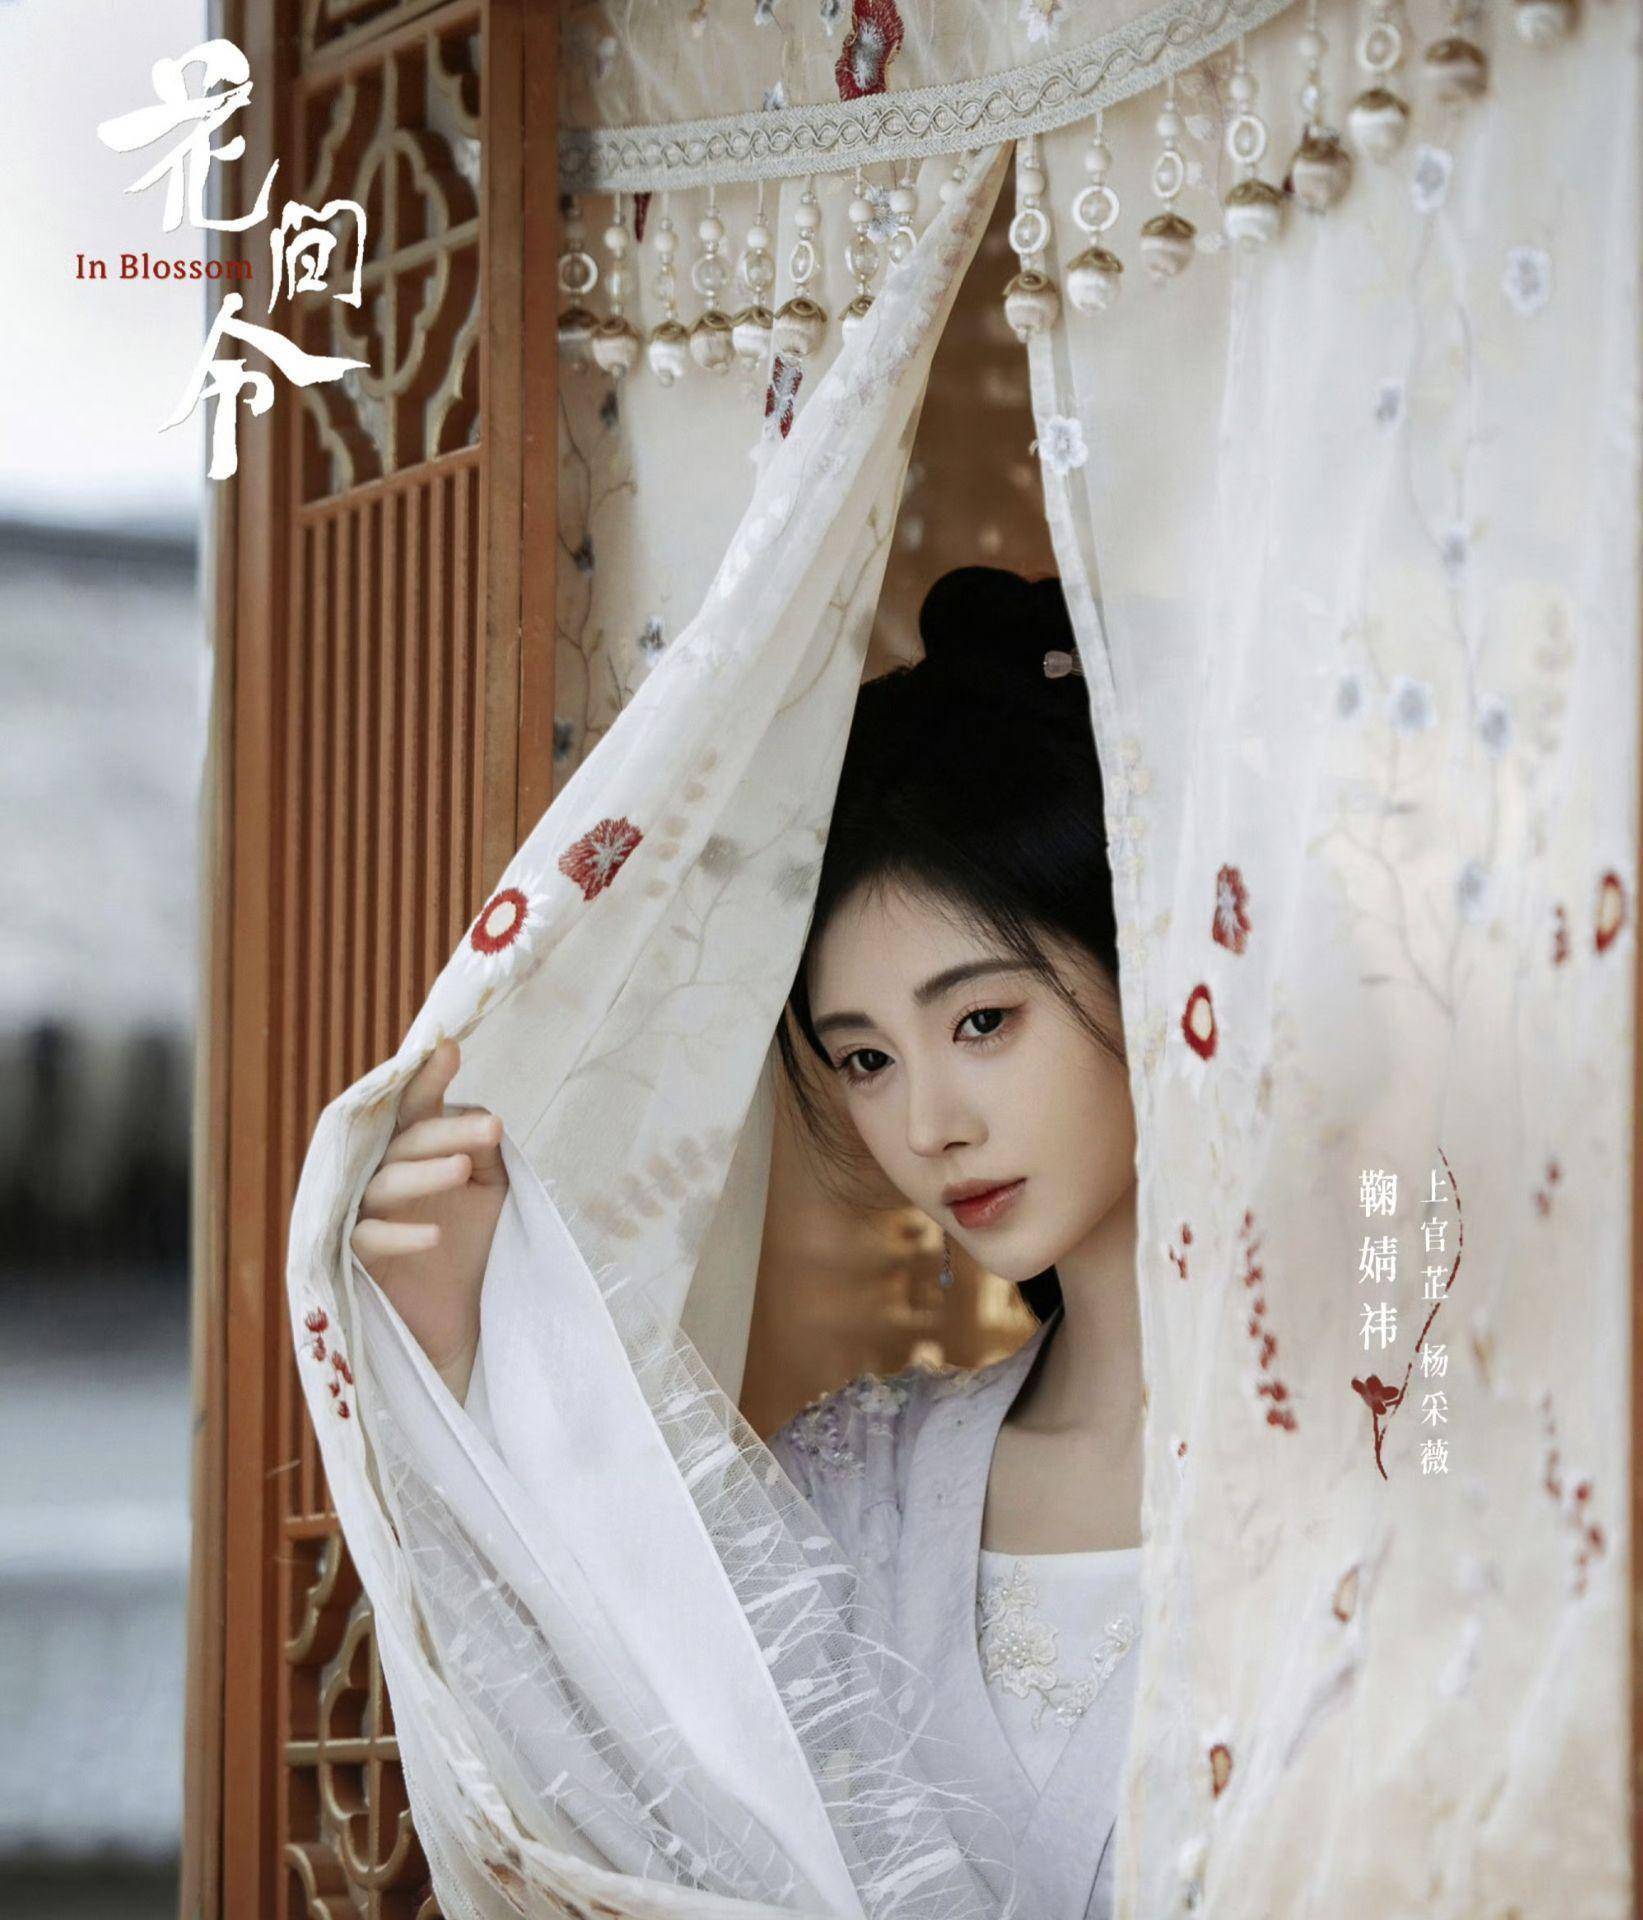 据悉,电视剧《花间令》由钟青执导,由四千年美女之称的鞠婧祎和古装